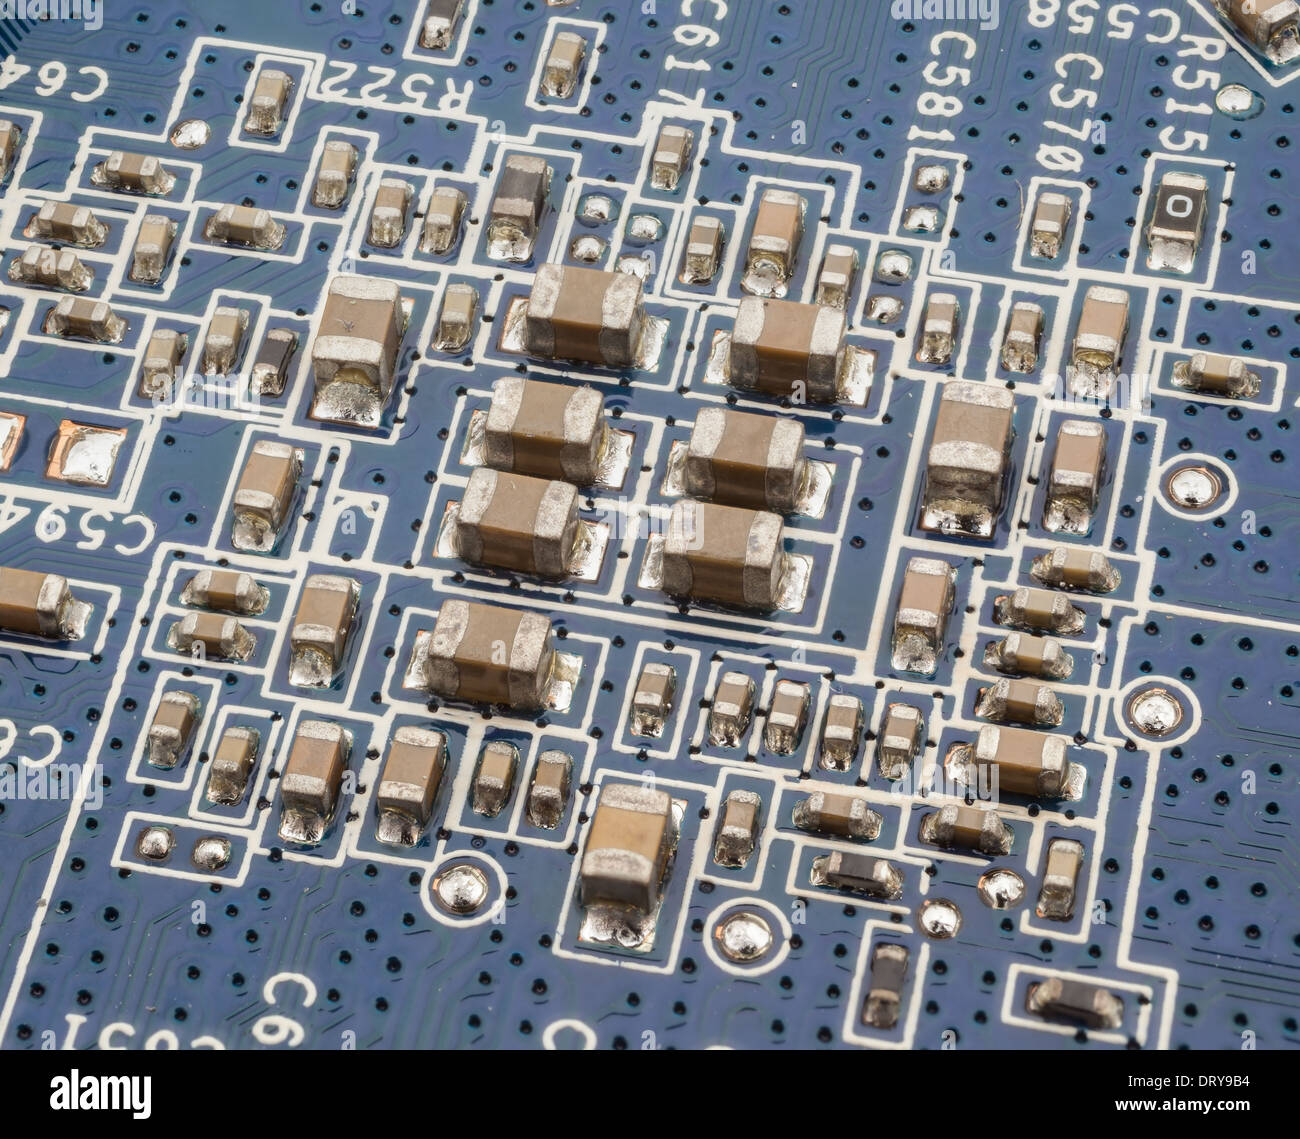 Elektronische Bauteile auf der Platine Stockfotografie - Alamy